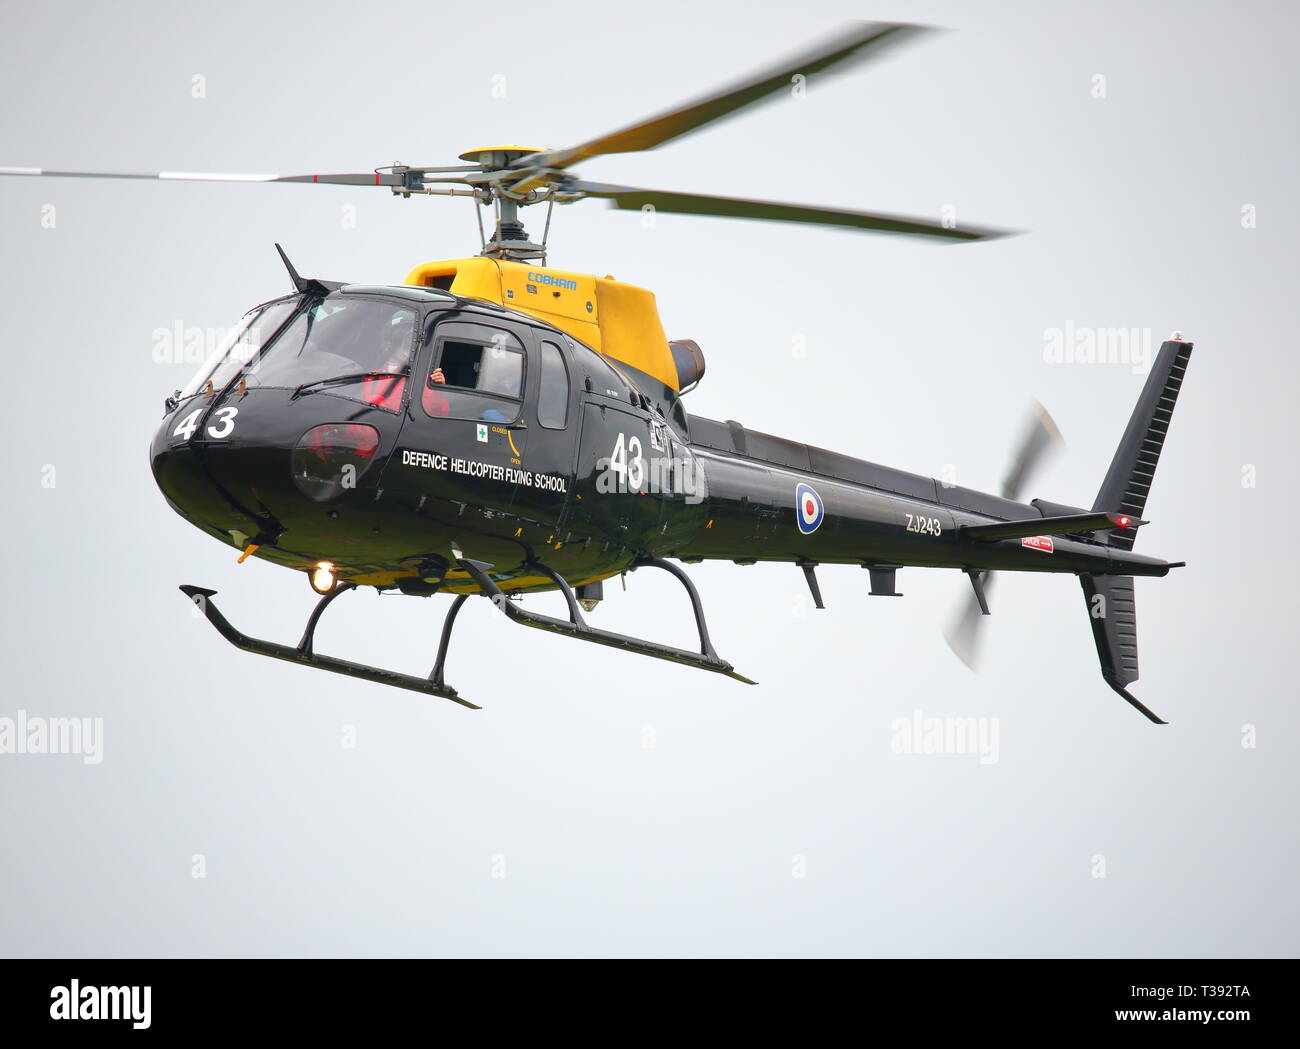 Aerospitale Hubschrauber als 350 BA ZJ 243 Defence Helicopter Flying School ZJ 243 Stockfoto